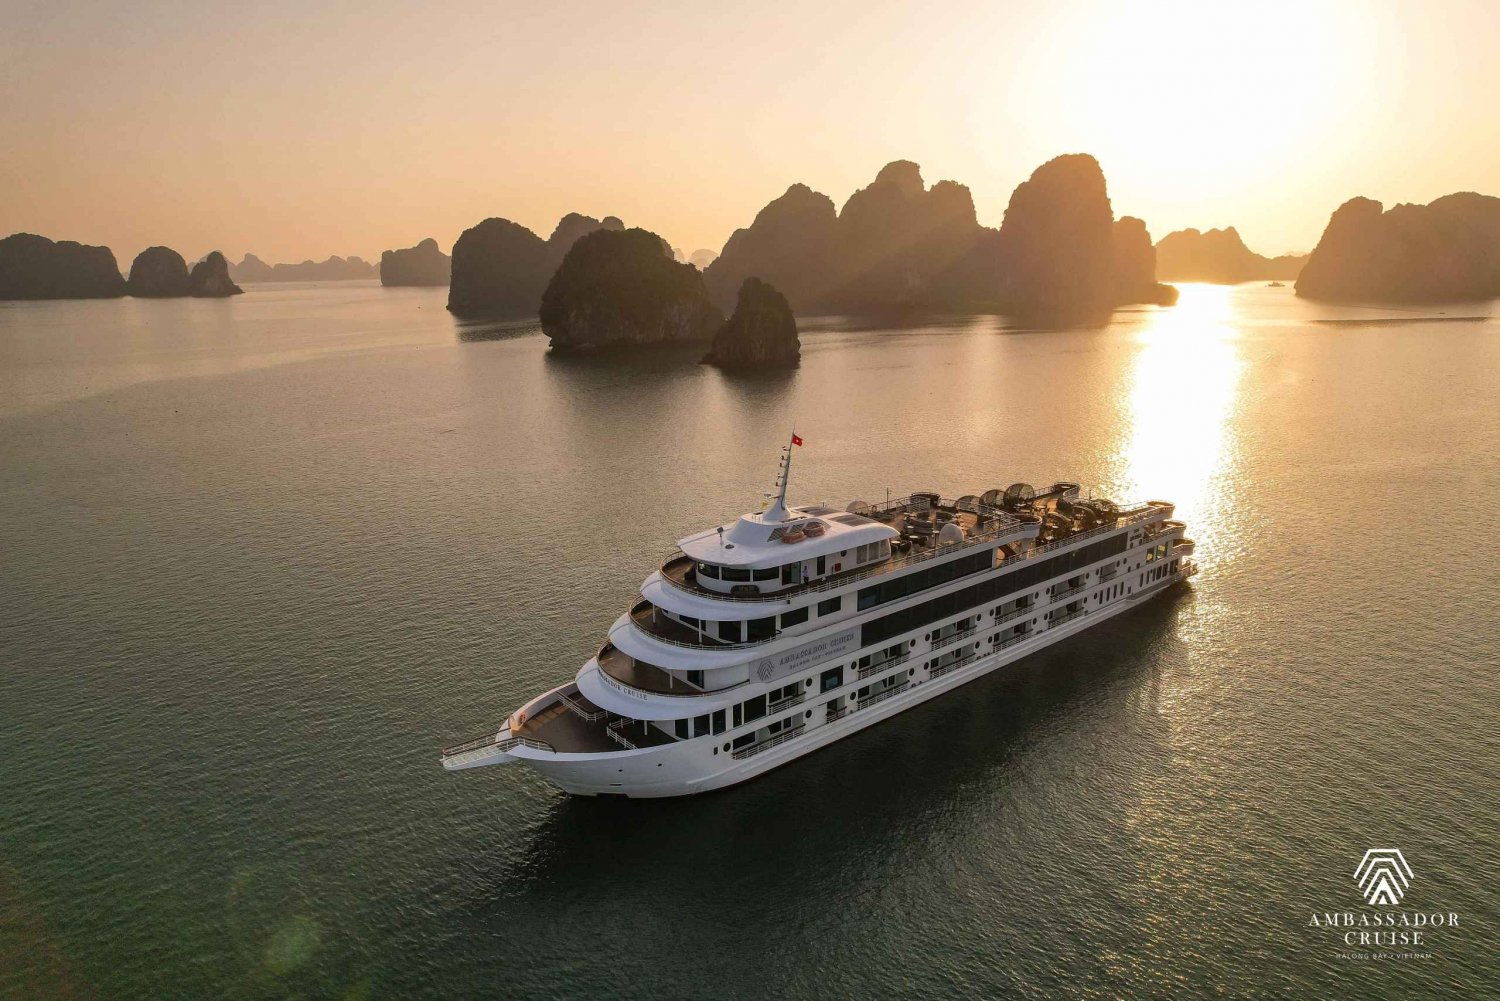 Ambassador Day Cruise- pakollinen aktiviteetti Ha Longissa